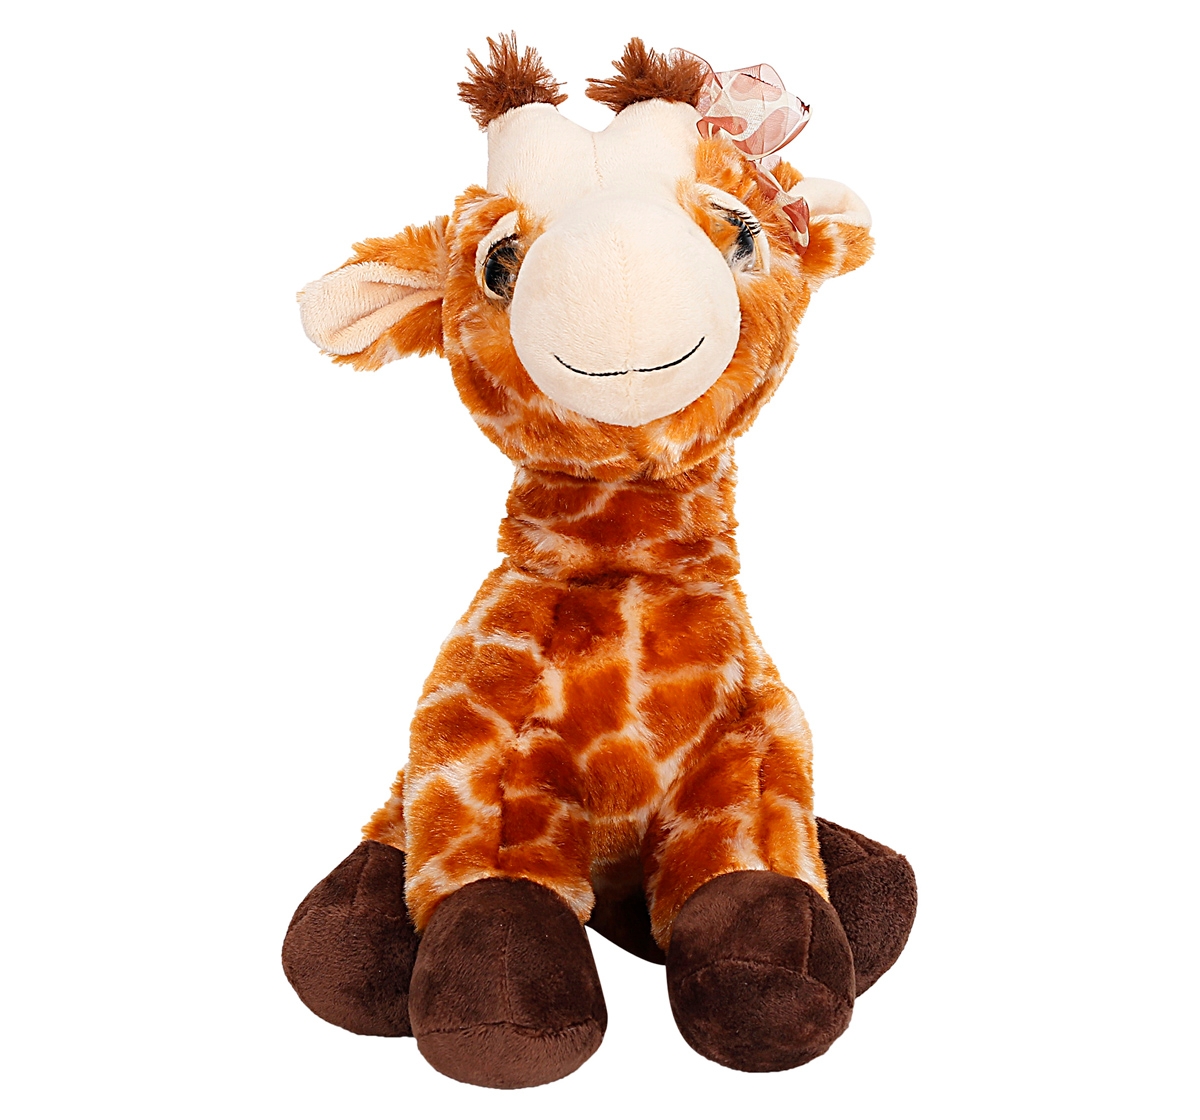 Fuzzbuzz | Fuzzbuzz 12cm Lash Giraffe Soft Toy for Kids 3Y+, Multicolour